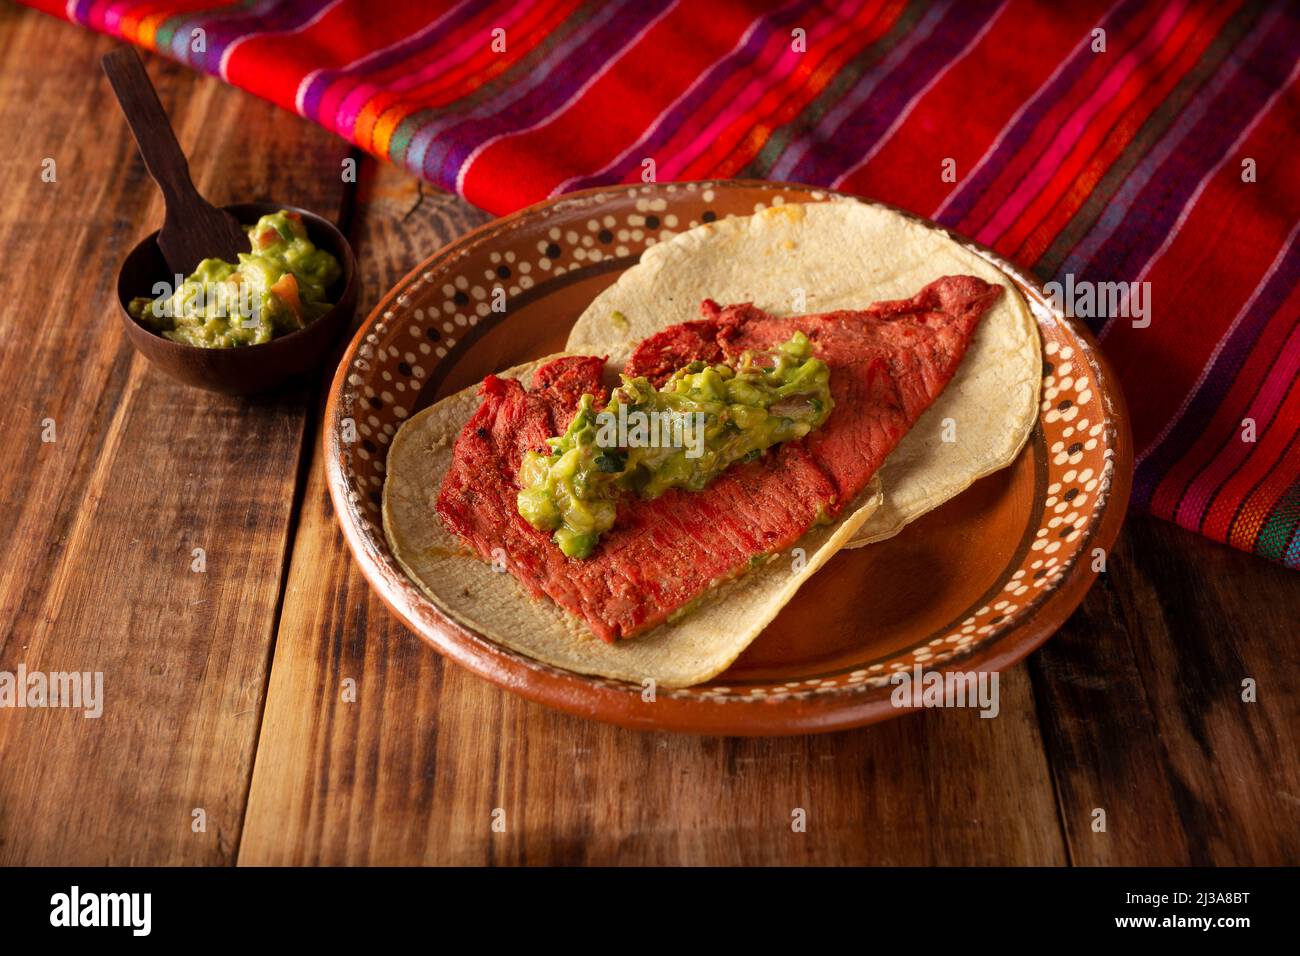 Tacos de Cecina Enchilada con Guacamole. Gesalzenes, sonnengetrocknetes Schweinefleisch oder Rindfleisch, gewürzt mit verschiedenen Gewürzen und Chilischoten, in der Regel in Tacos gegessen Stockfoto